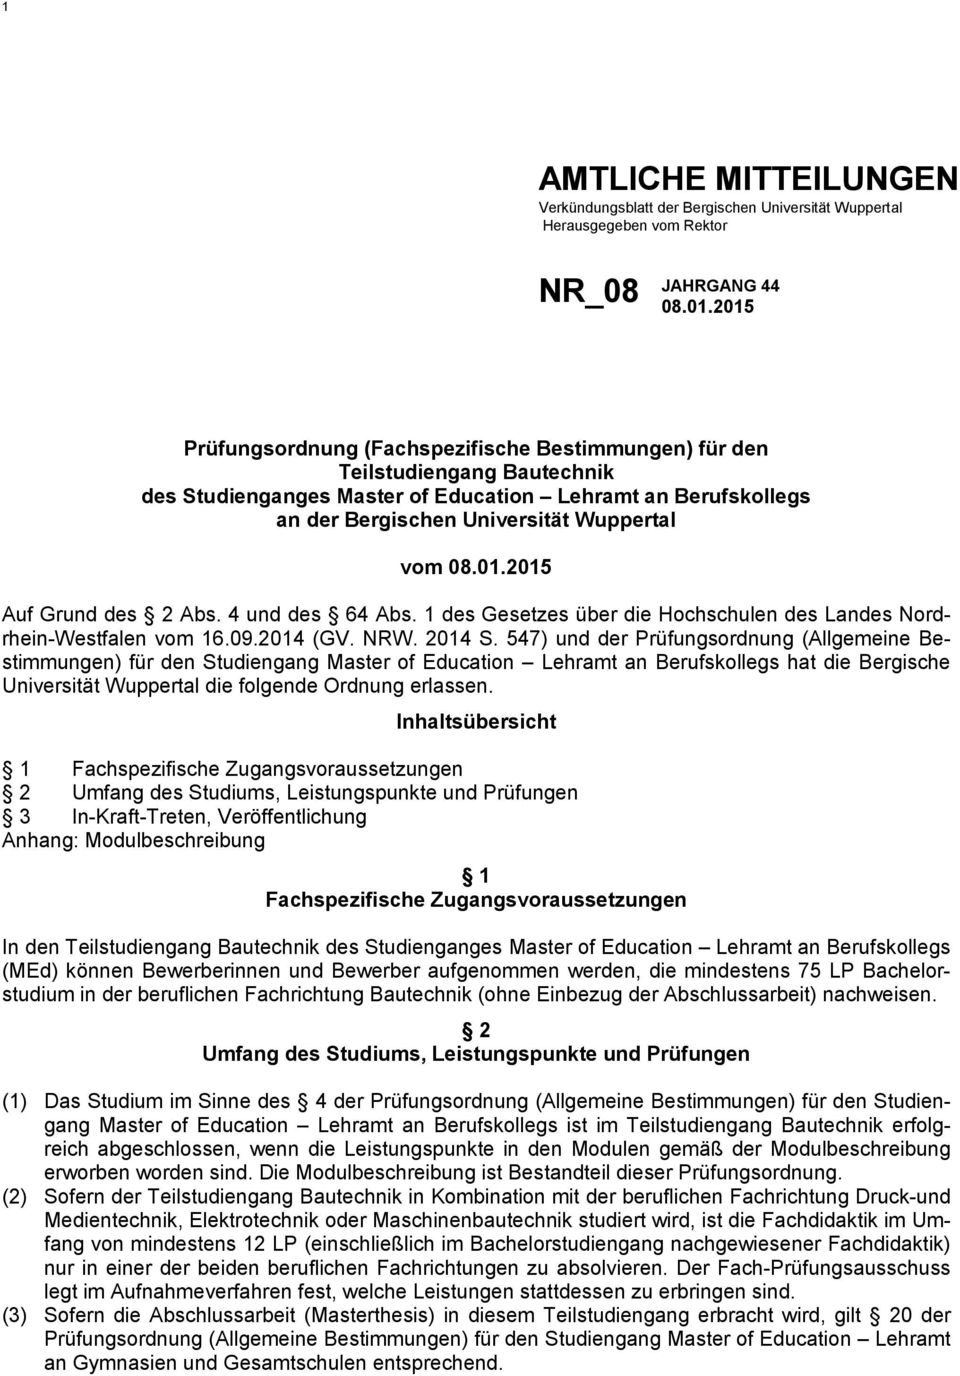 4 und des 64 Abs. 1 des Gesetzes über die Hochschulen des Landes Nordrhein-Westfalen vom 16.09.2014 (GV. NRW. 2014 S.